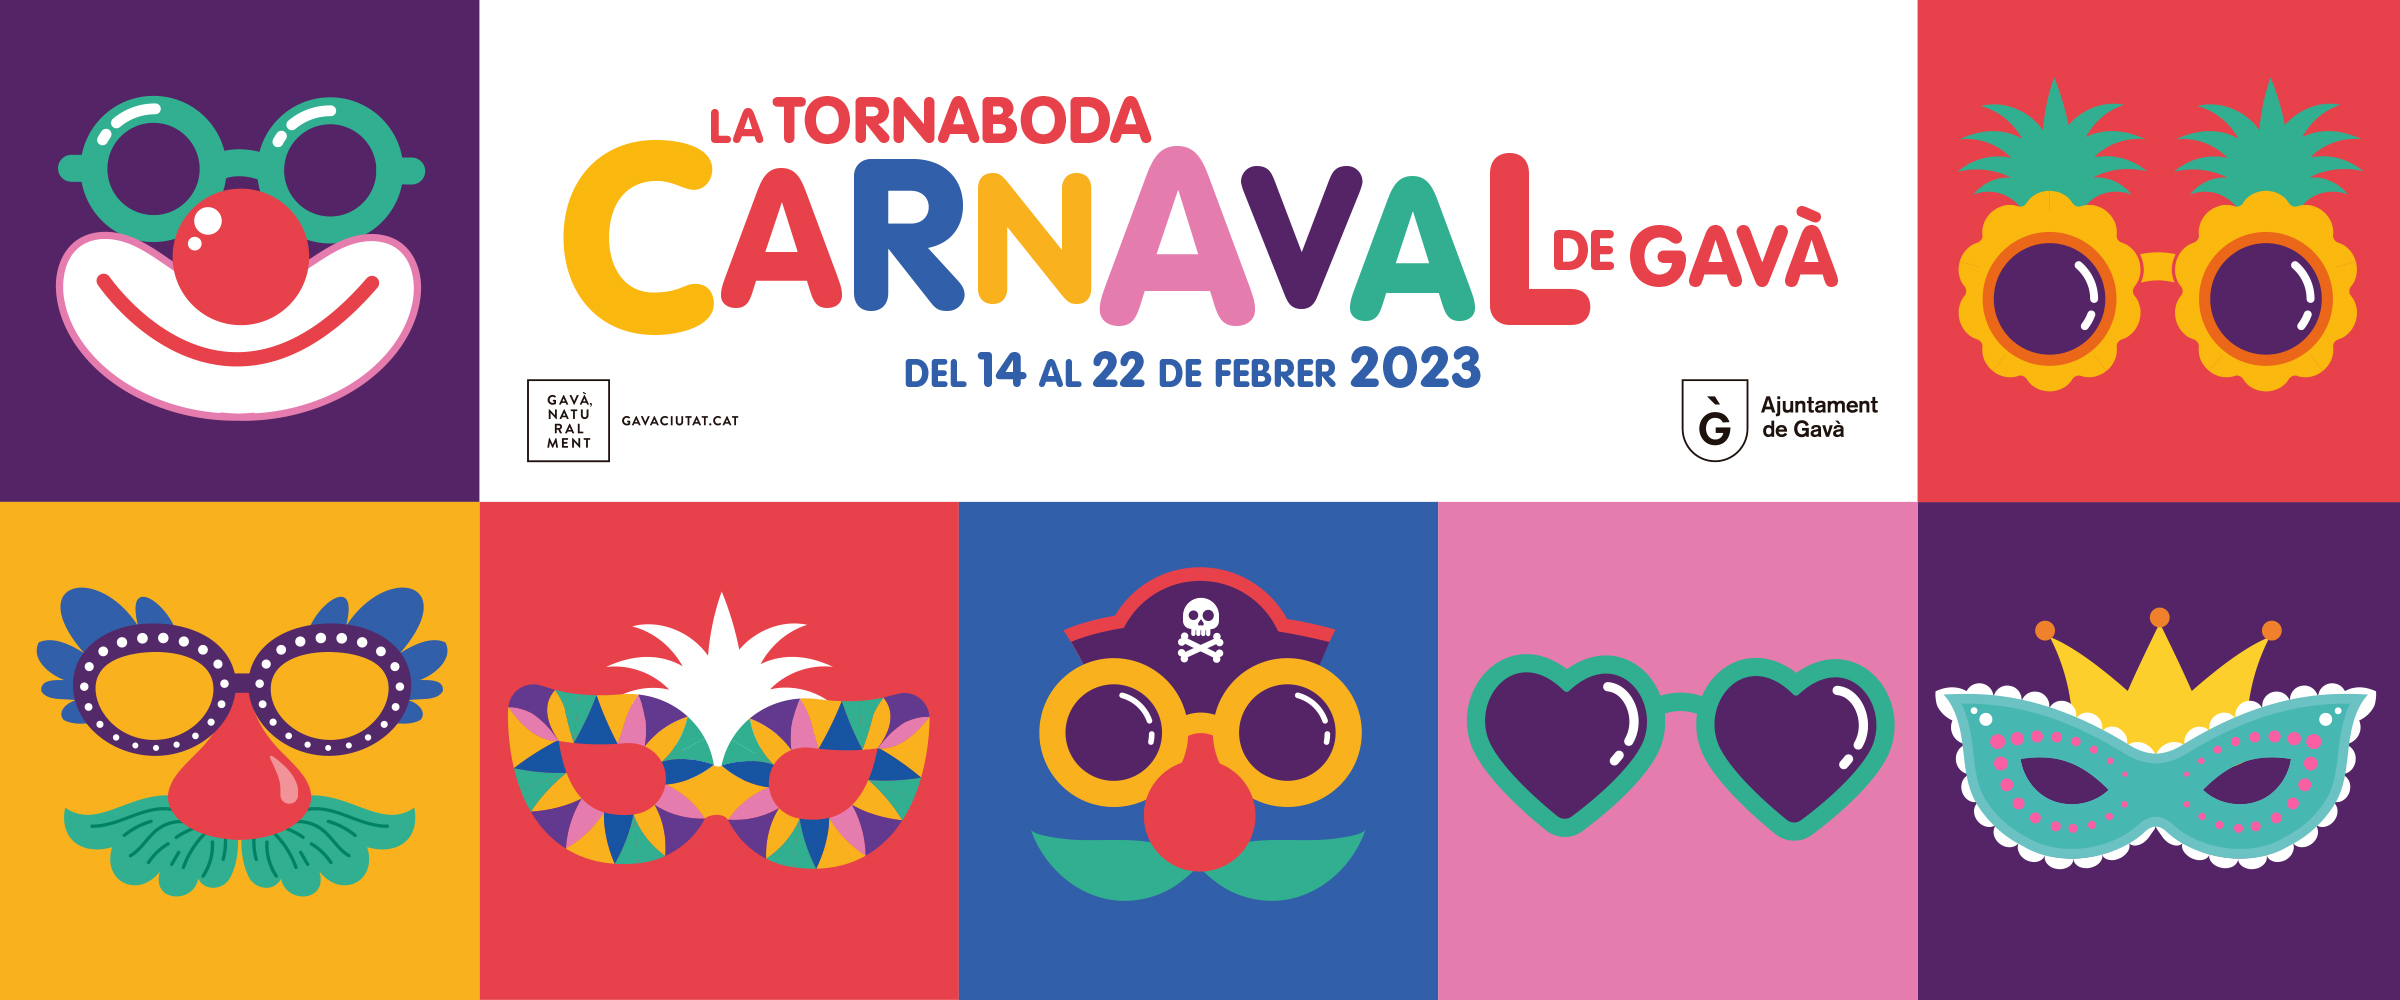 Programació Carnaval 2023 a Gavà